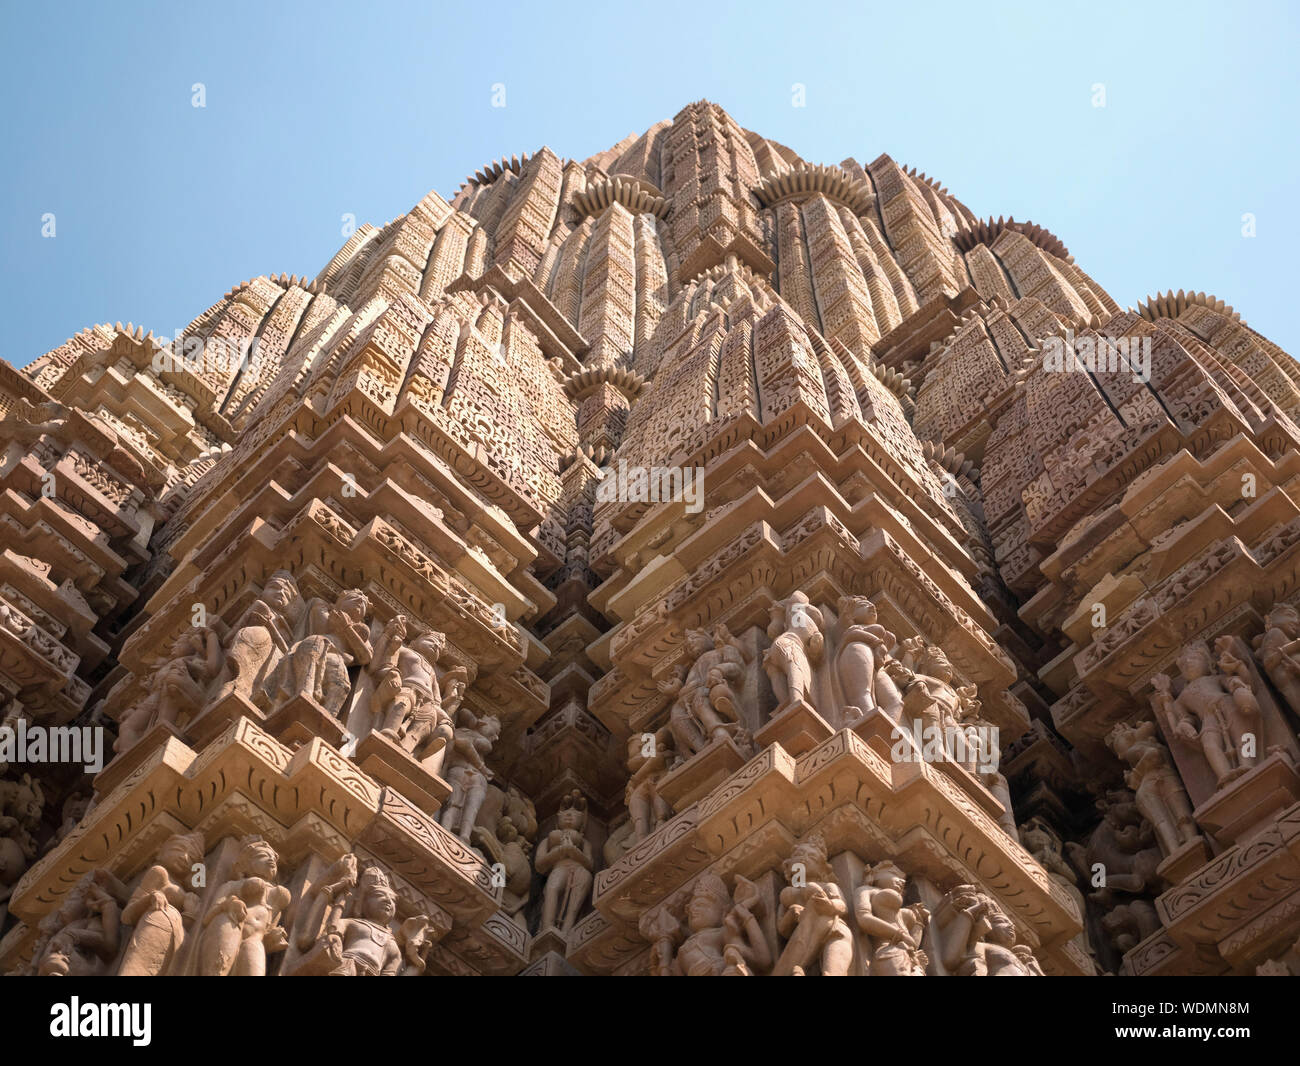 Detailed stone carvings on the Kandariya Mahadeva Temple, Khajuraho Group of Monuments, Khajuraho, Madhya Pradesh, India, Asia Stock Photo